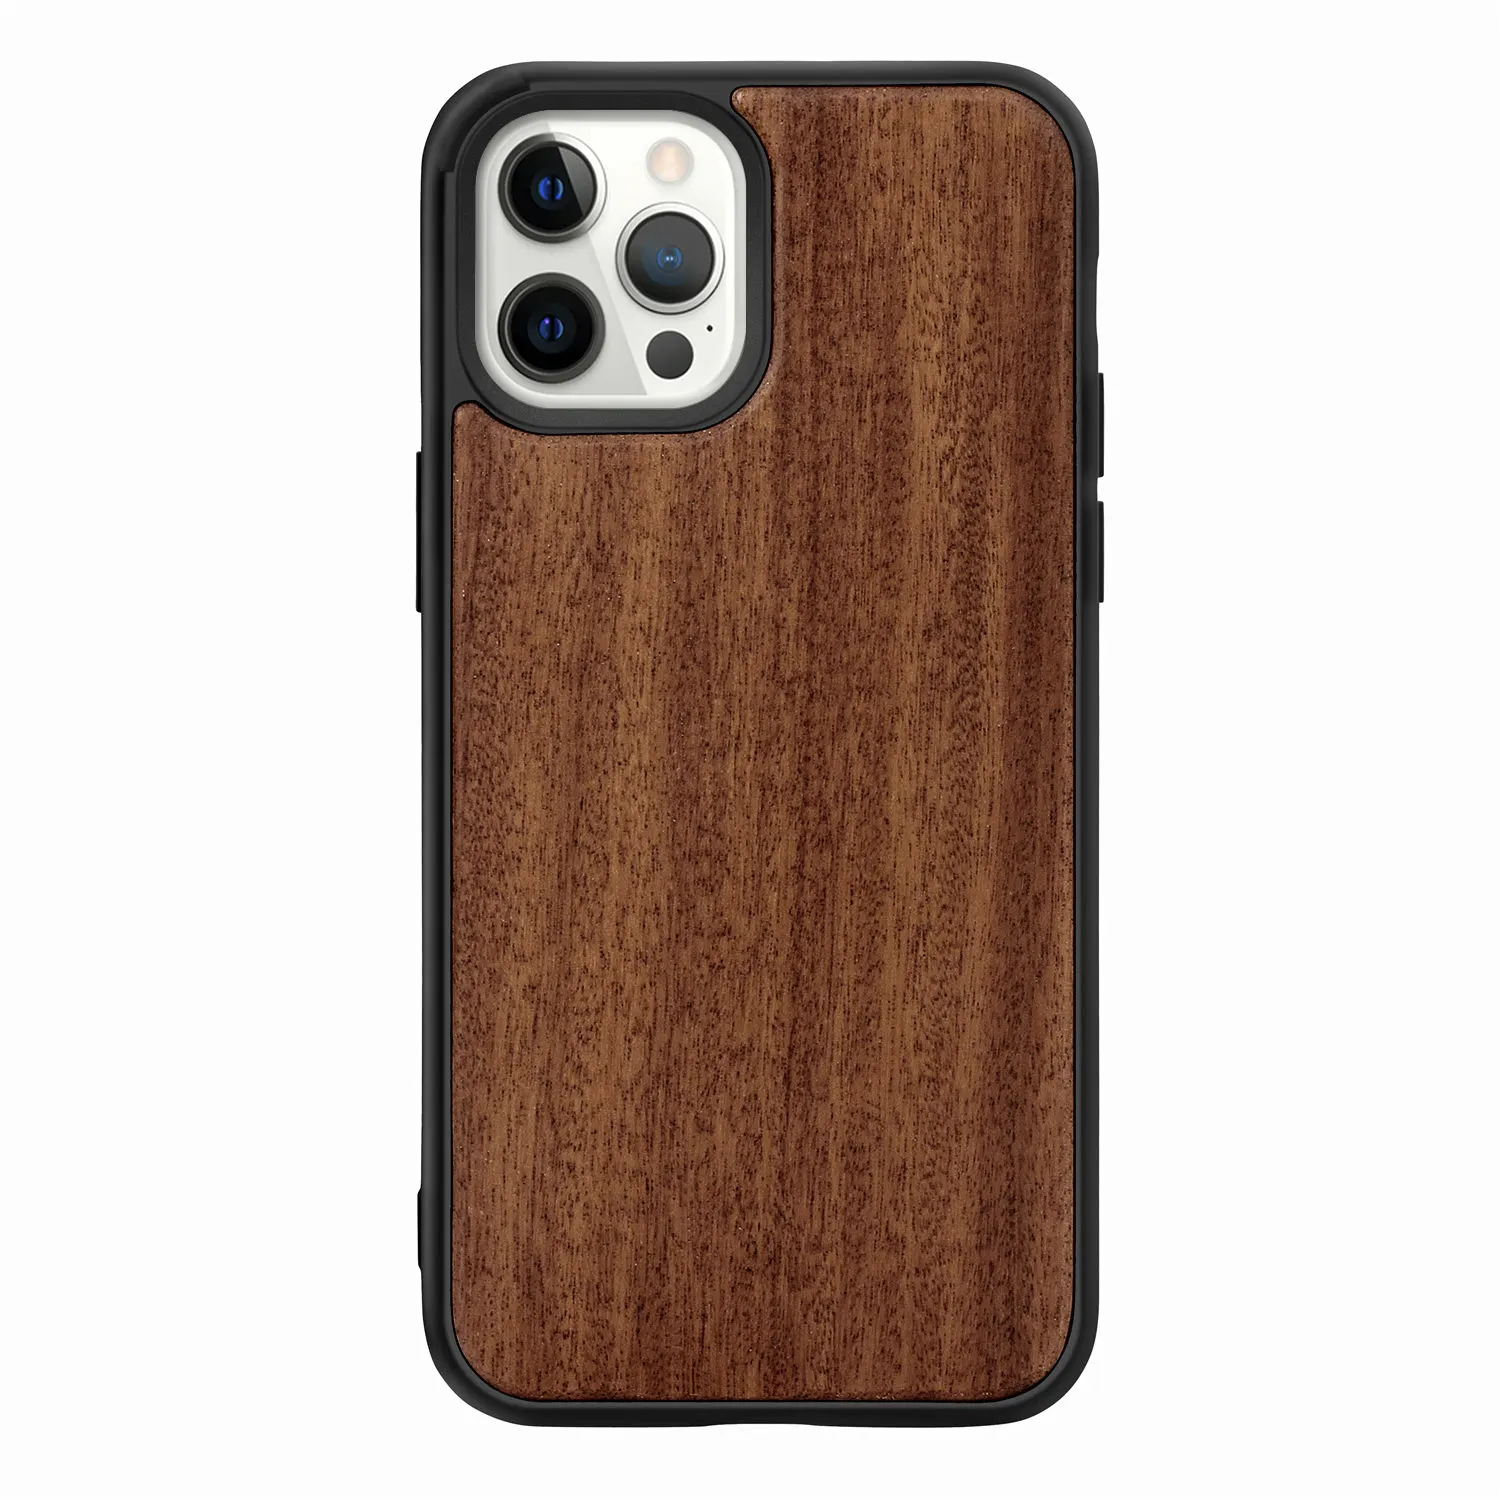 Capa de madeira real para iphone, proteção de madeira de bambu genuíno para iphone 13 mini 12 se 2022 xr x s max 8 7 6 plus